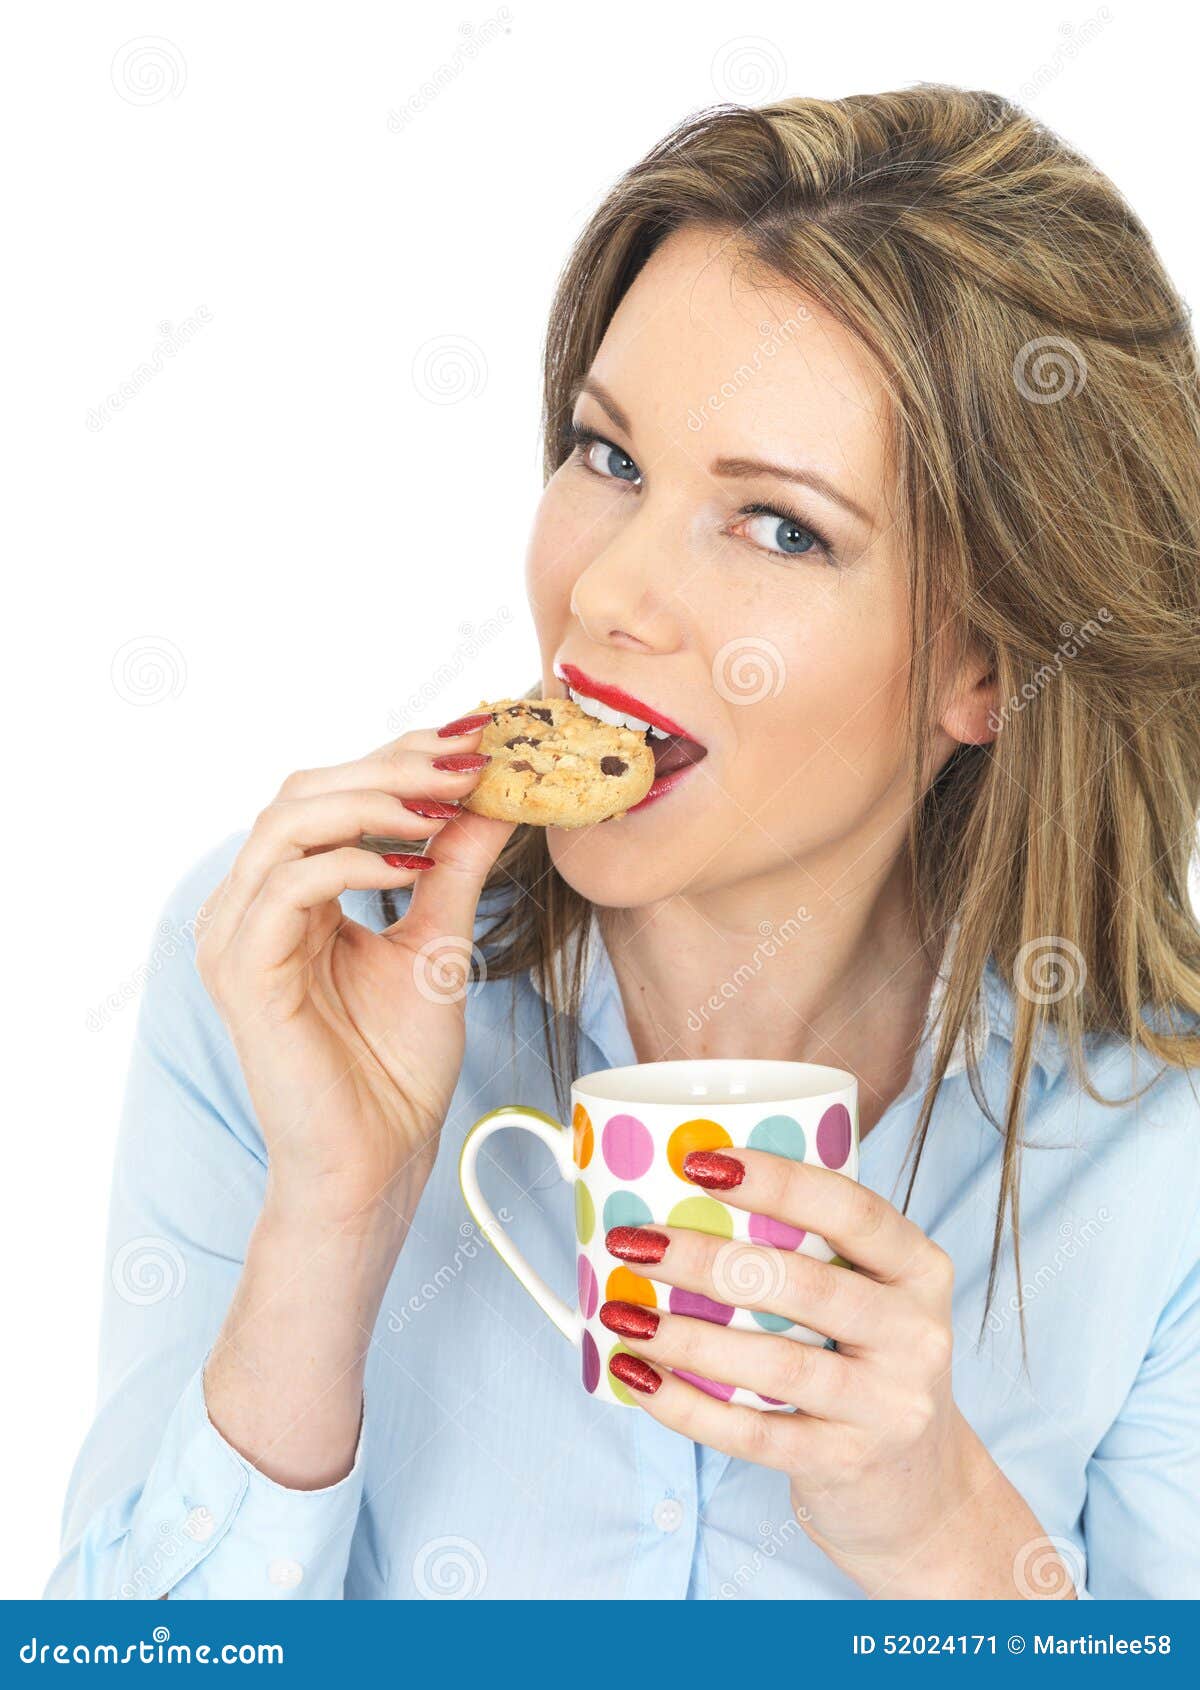 Чай пью с печеньями. Девушка с печеньем. Девушка пьет чай с печеньем. Печенье и рука девушек. Девушка с печеньем фото.